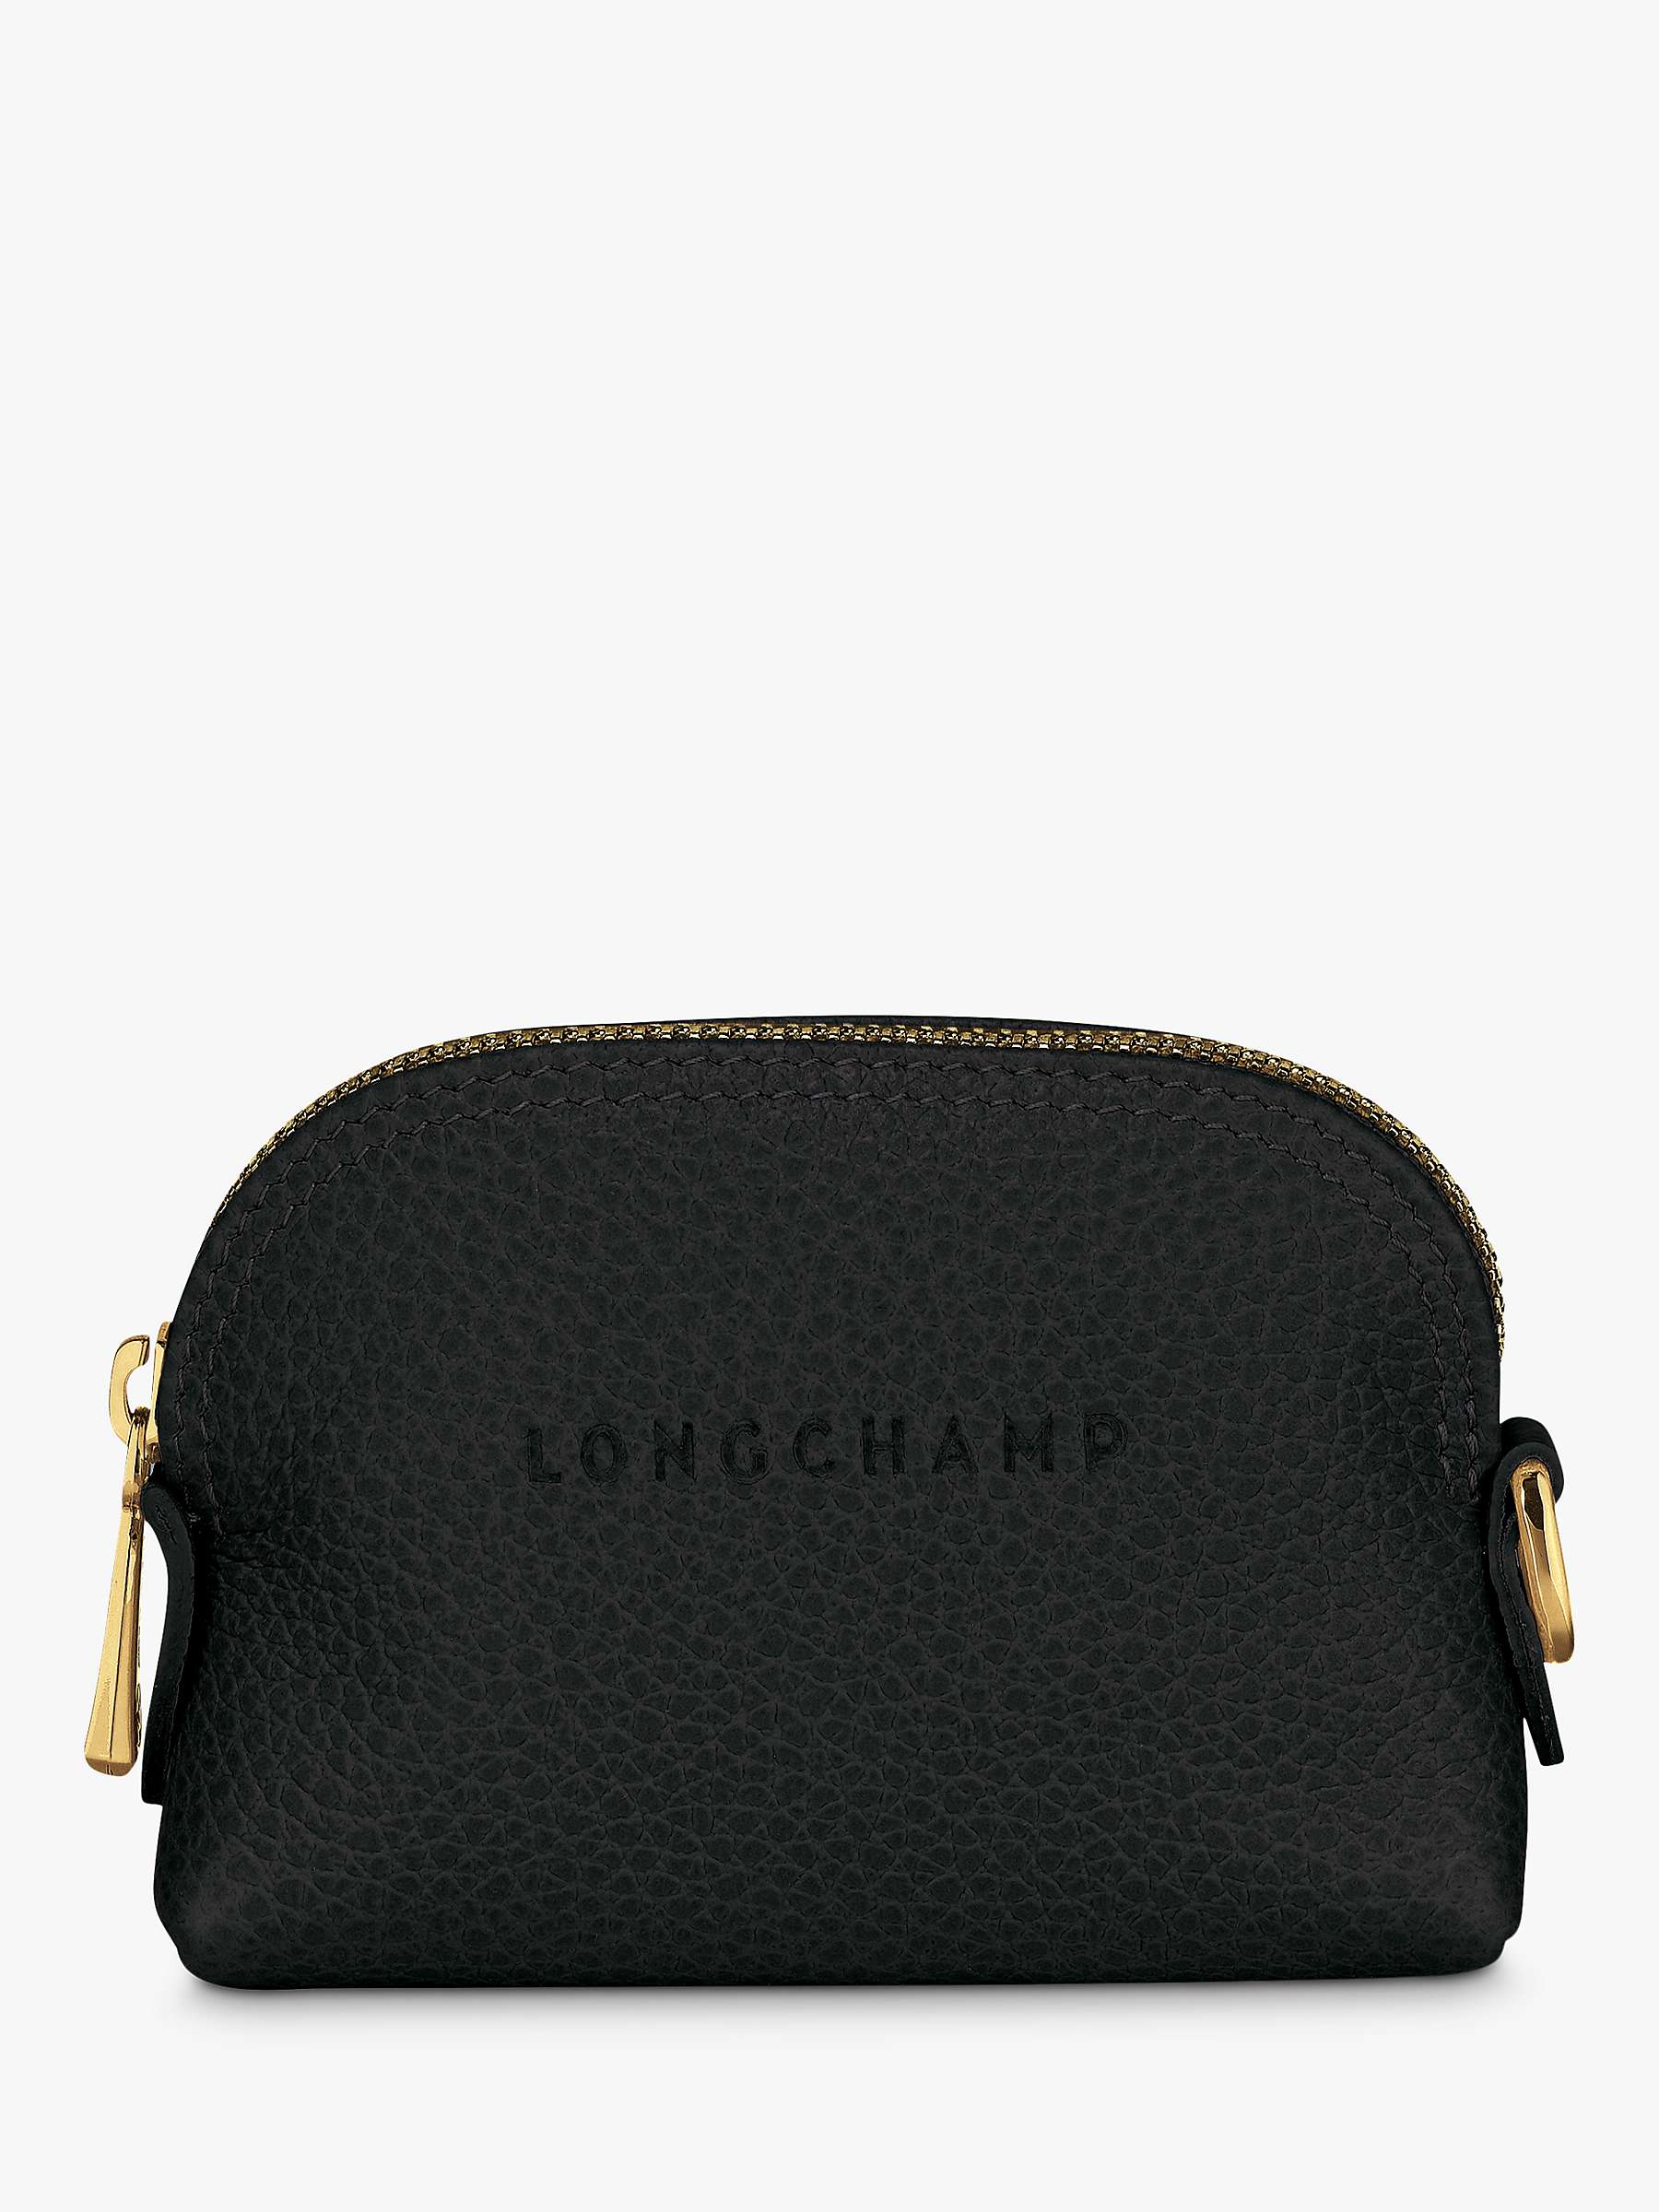 Longchamp Le Foulonné Leather Coin Purse, Black/Gold at John Lewis ...